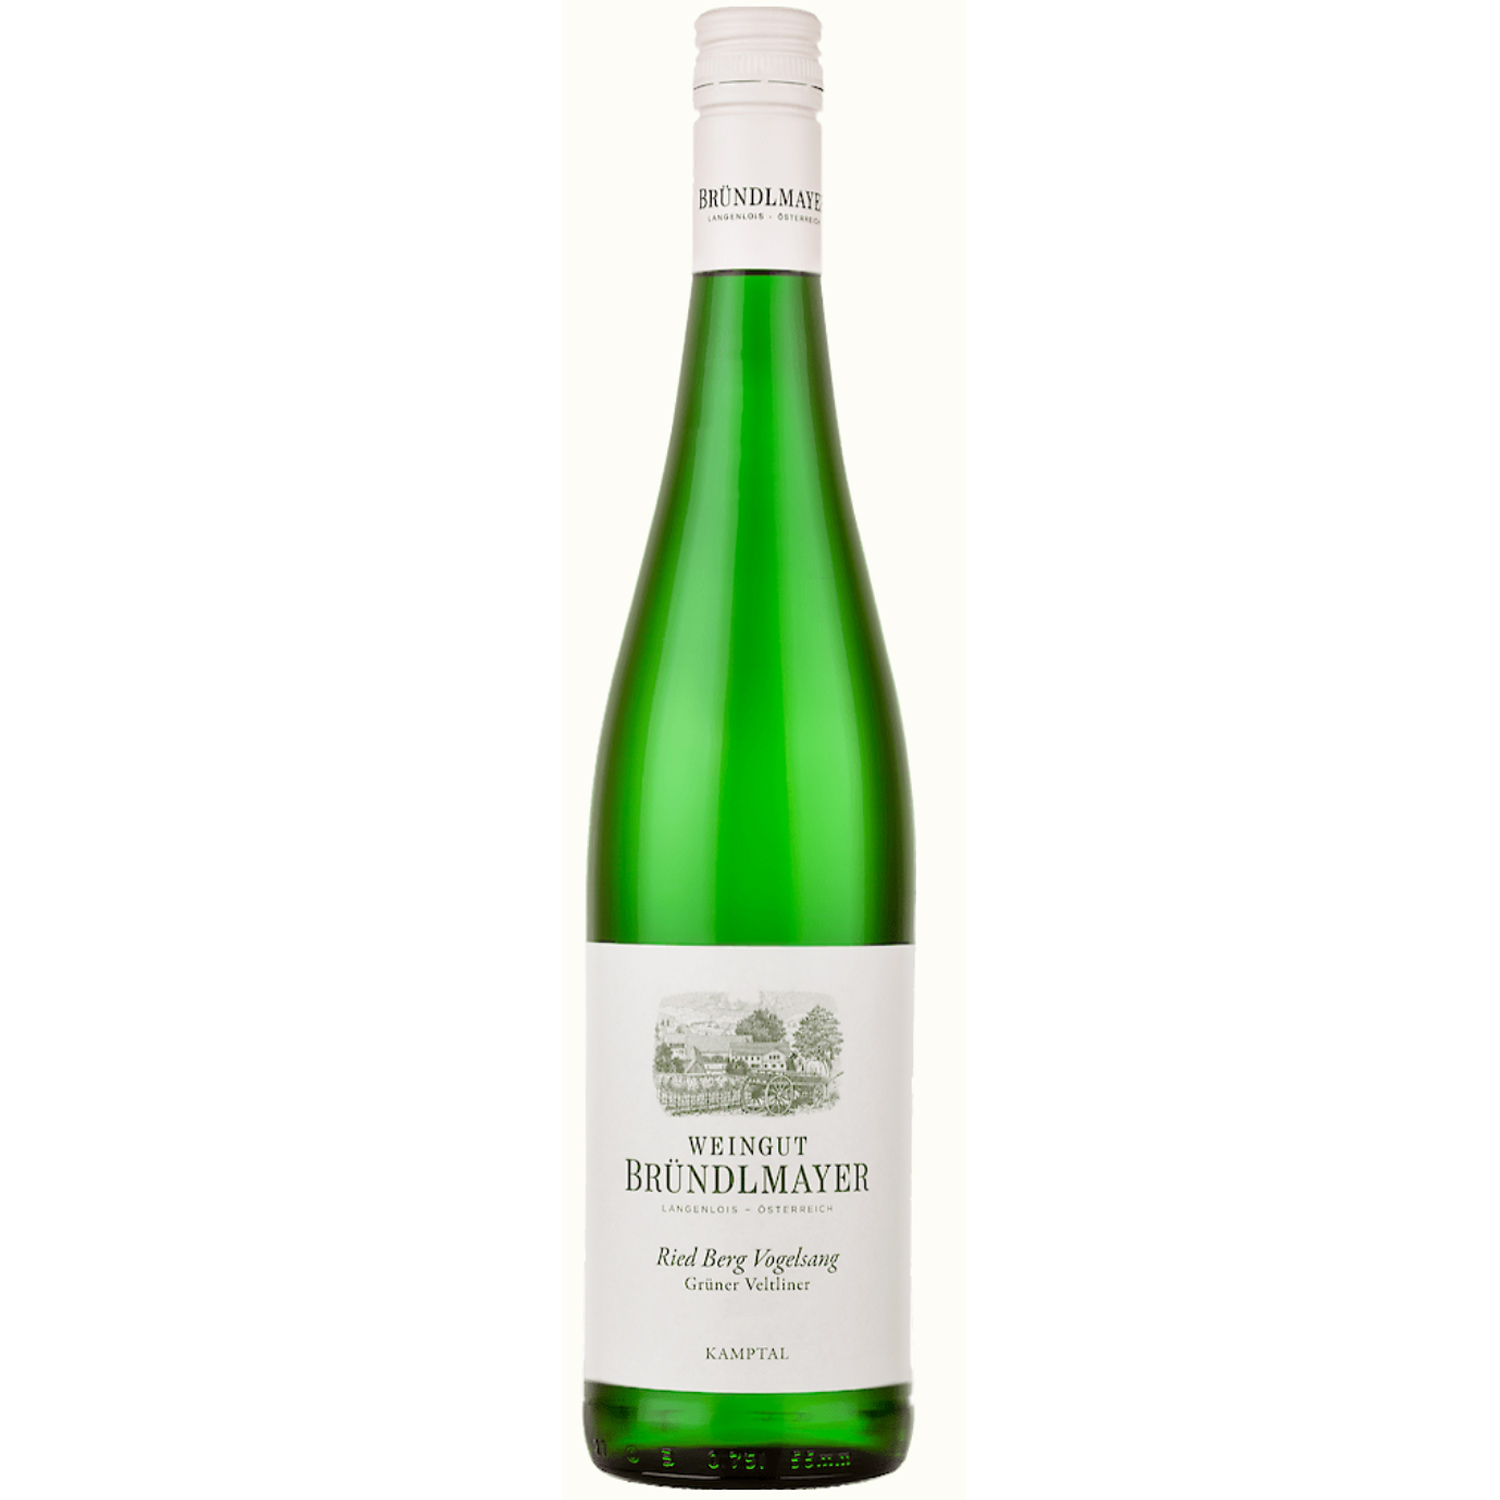 Weingut Bründlmayer Berg Vogelsang Grüner Veltliner 2019